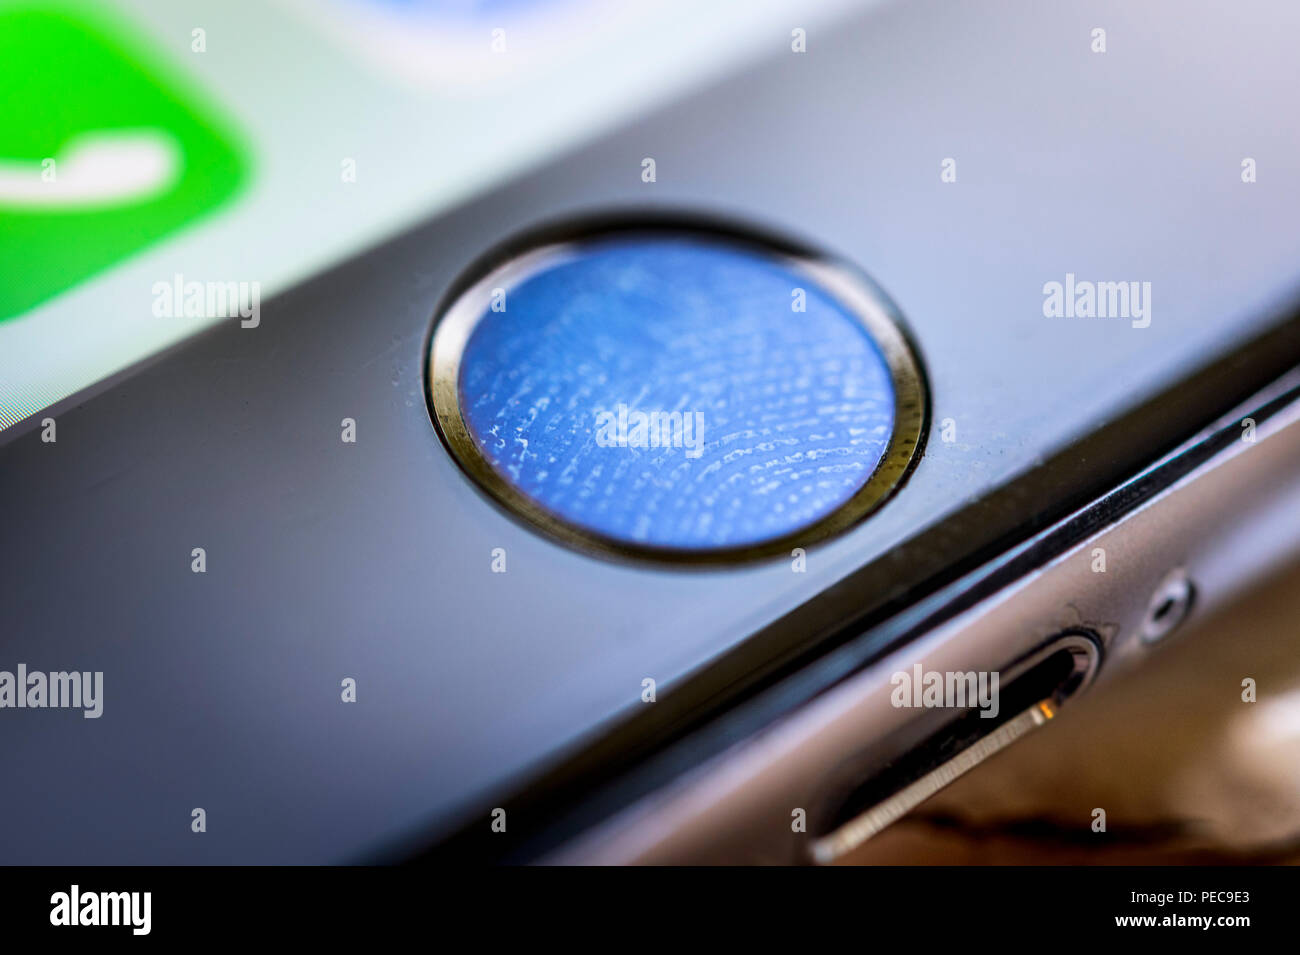 Nahaufnahme der Schaltfläche "Home" des iPhone 6s mit Fingerabdruck auf Fingerprint Sensor, Touch ID, Fingerprint Reader, iOS, Smartphone Stockfoto